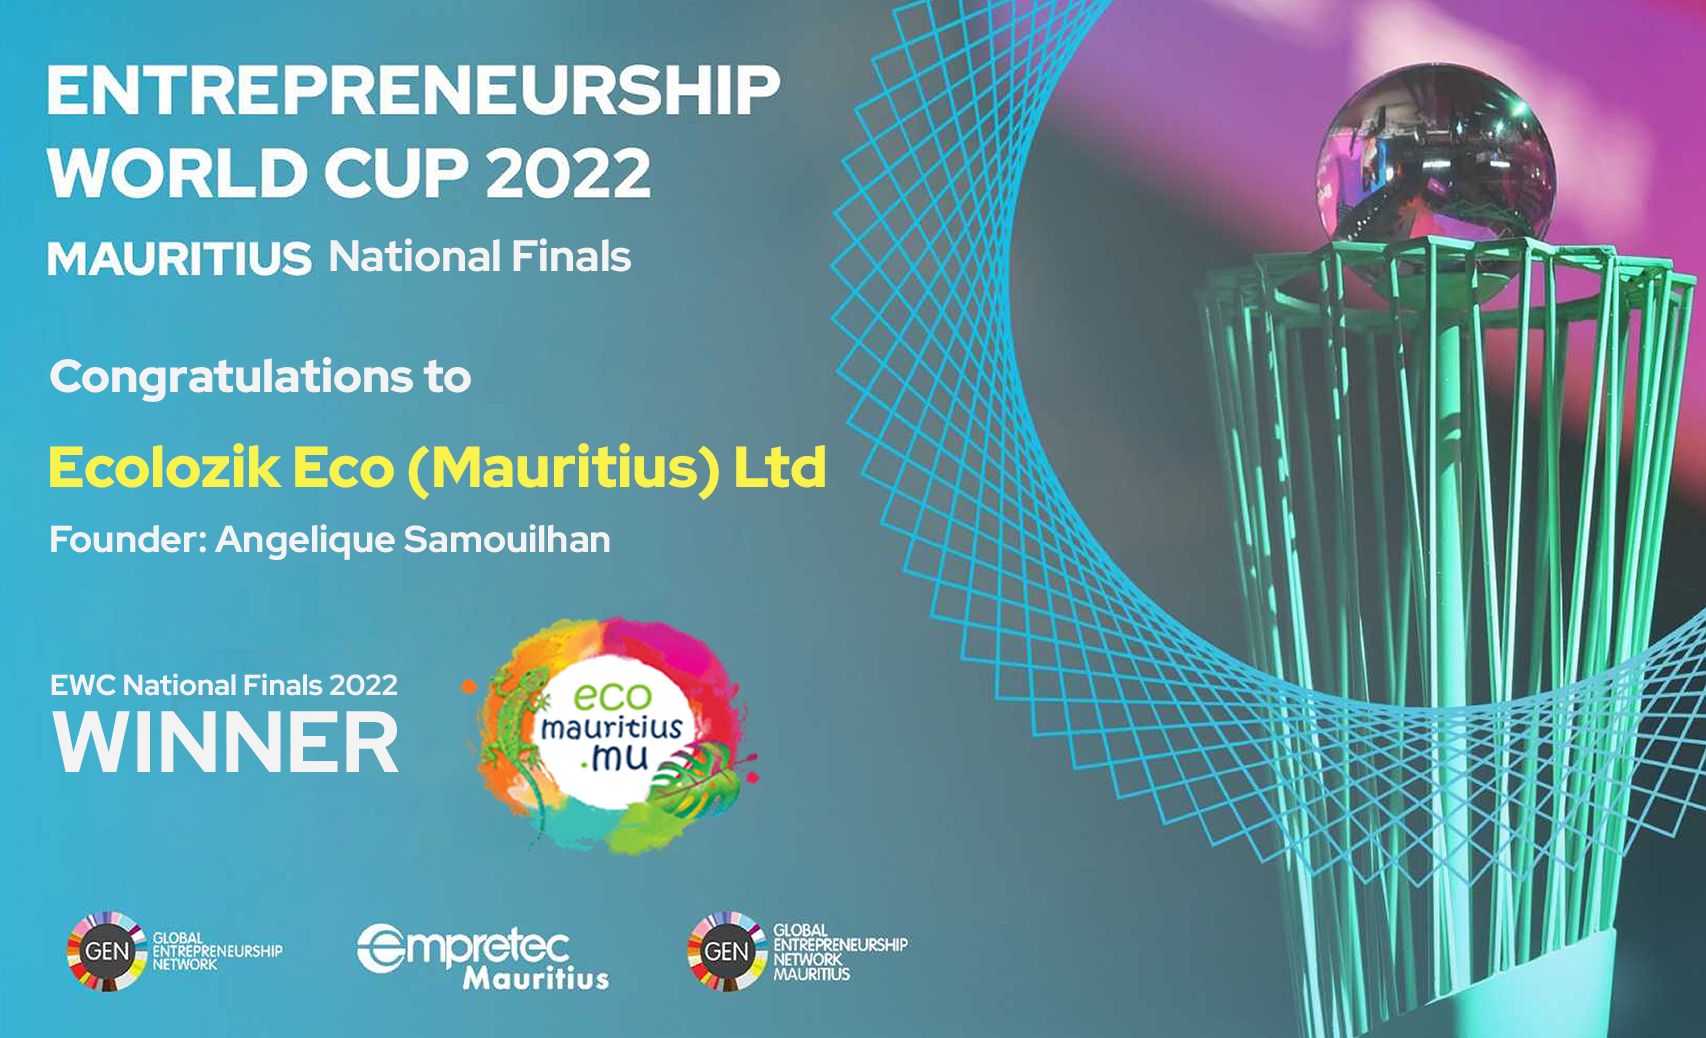 EcoMauritius.mu National winner Mauritius 2022